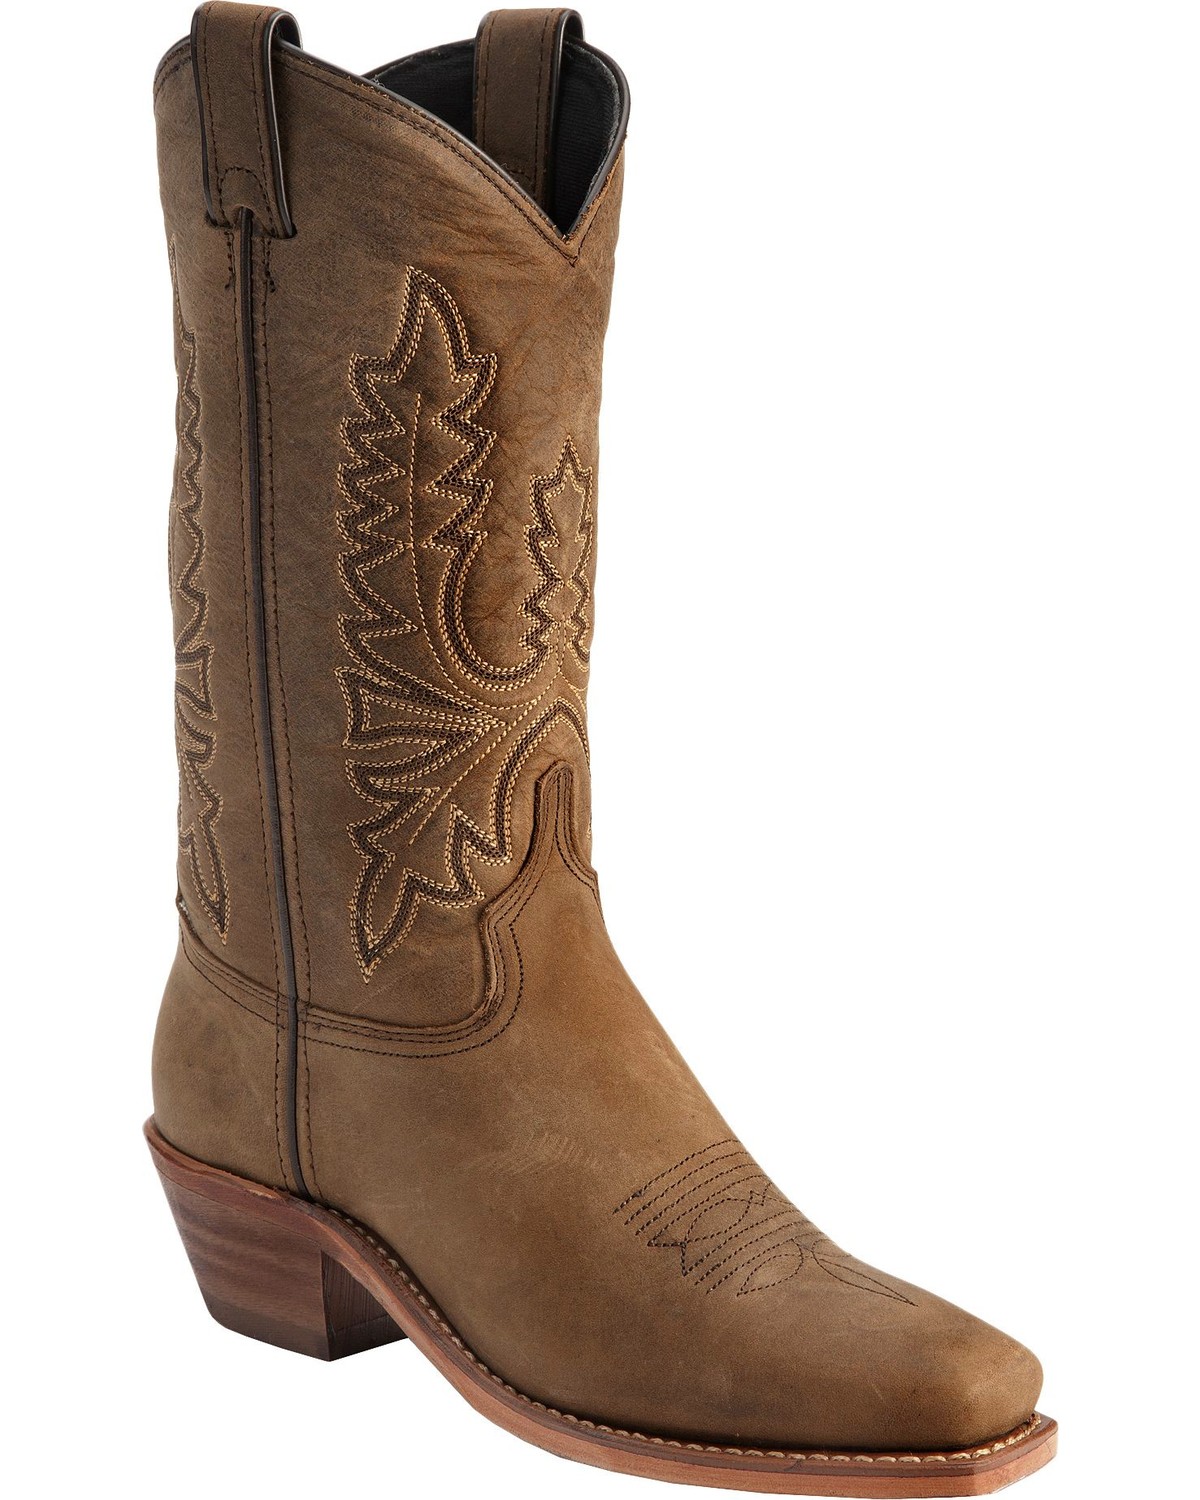 Abilene Women's Western Boots - Square Toe